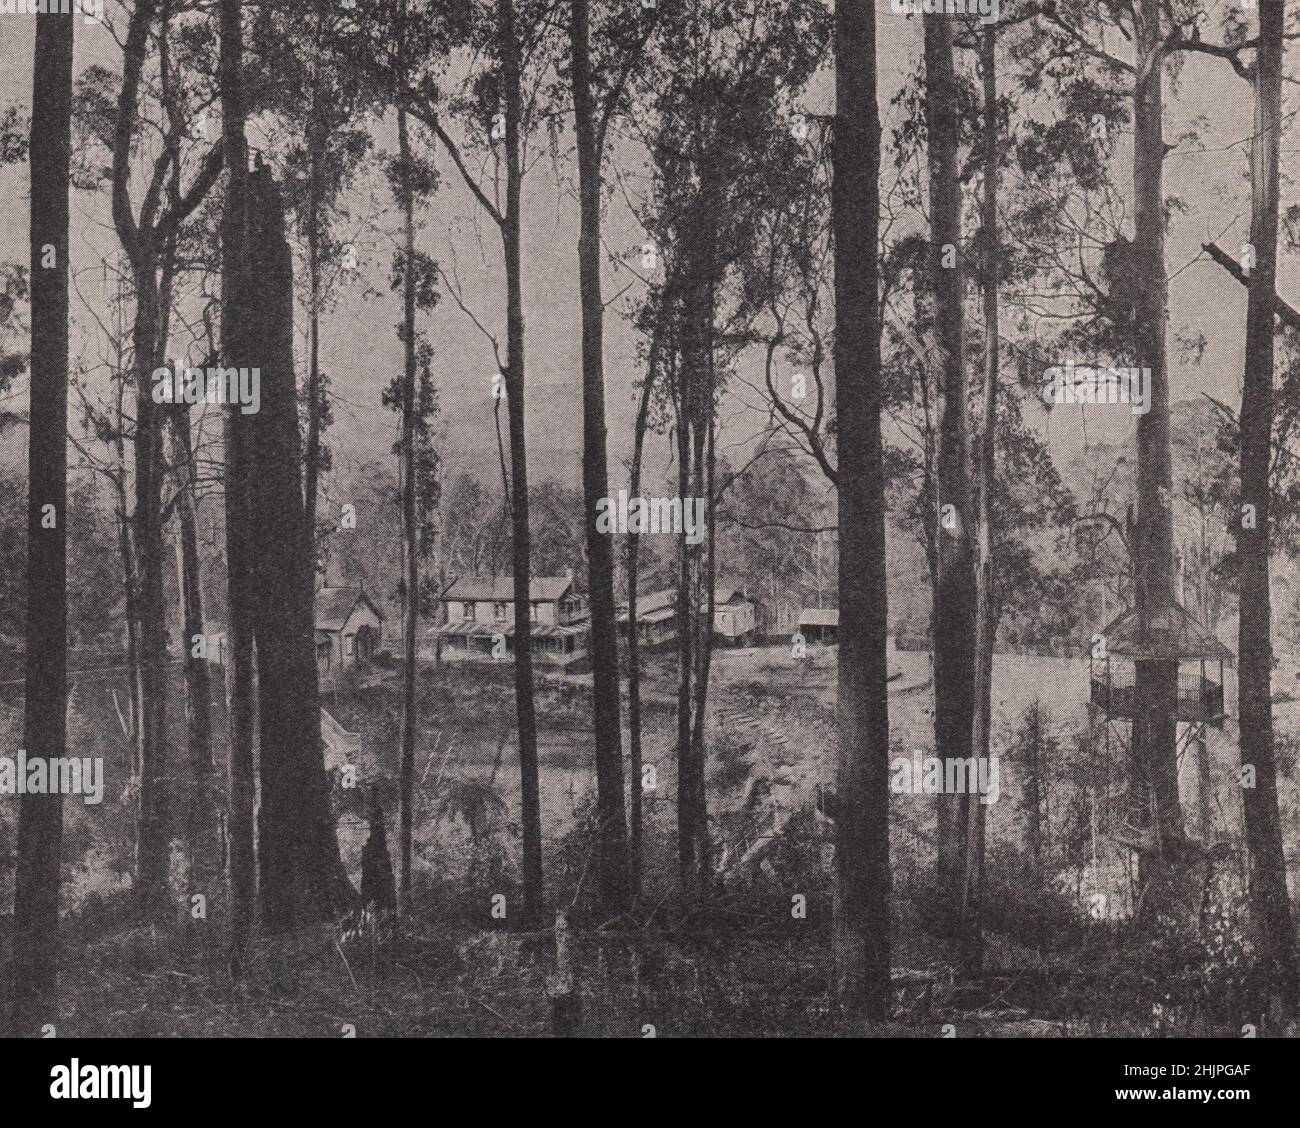 La prospérité fermement établie : les homesteads dans la vallée. Australie (1923) Banque D'Images